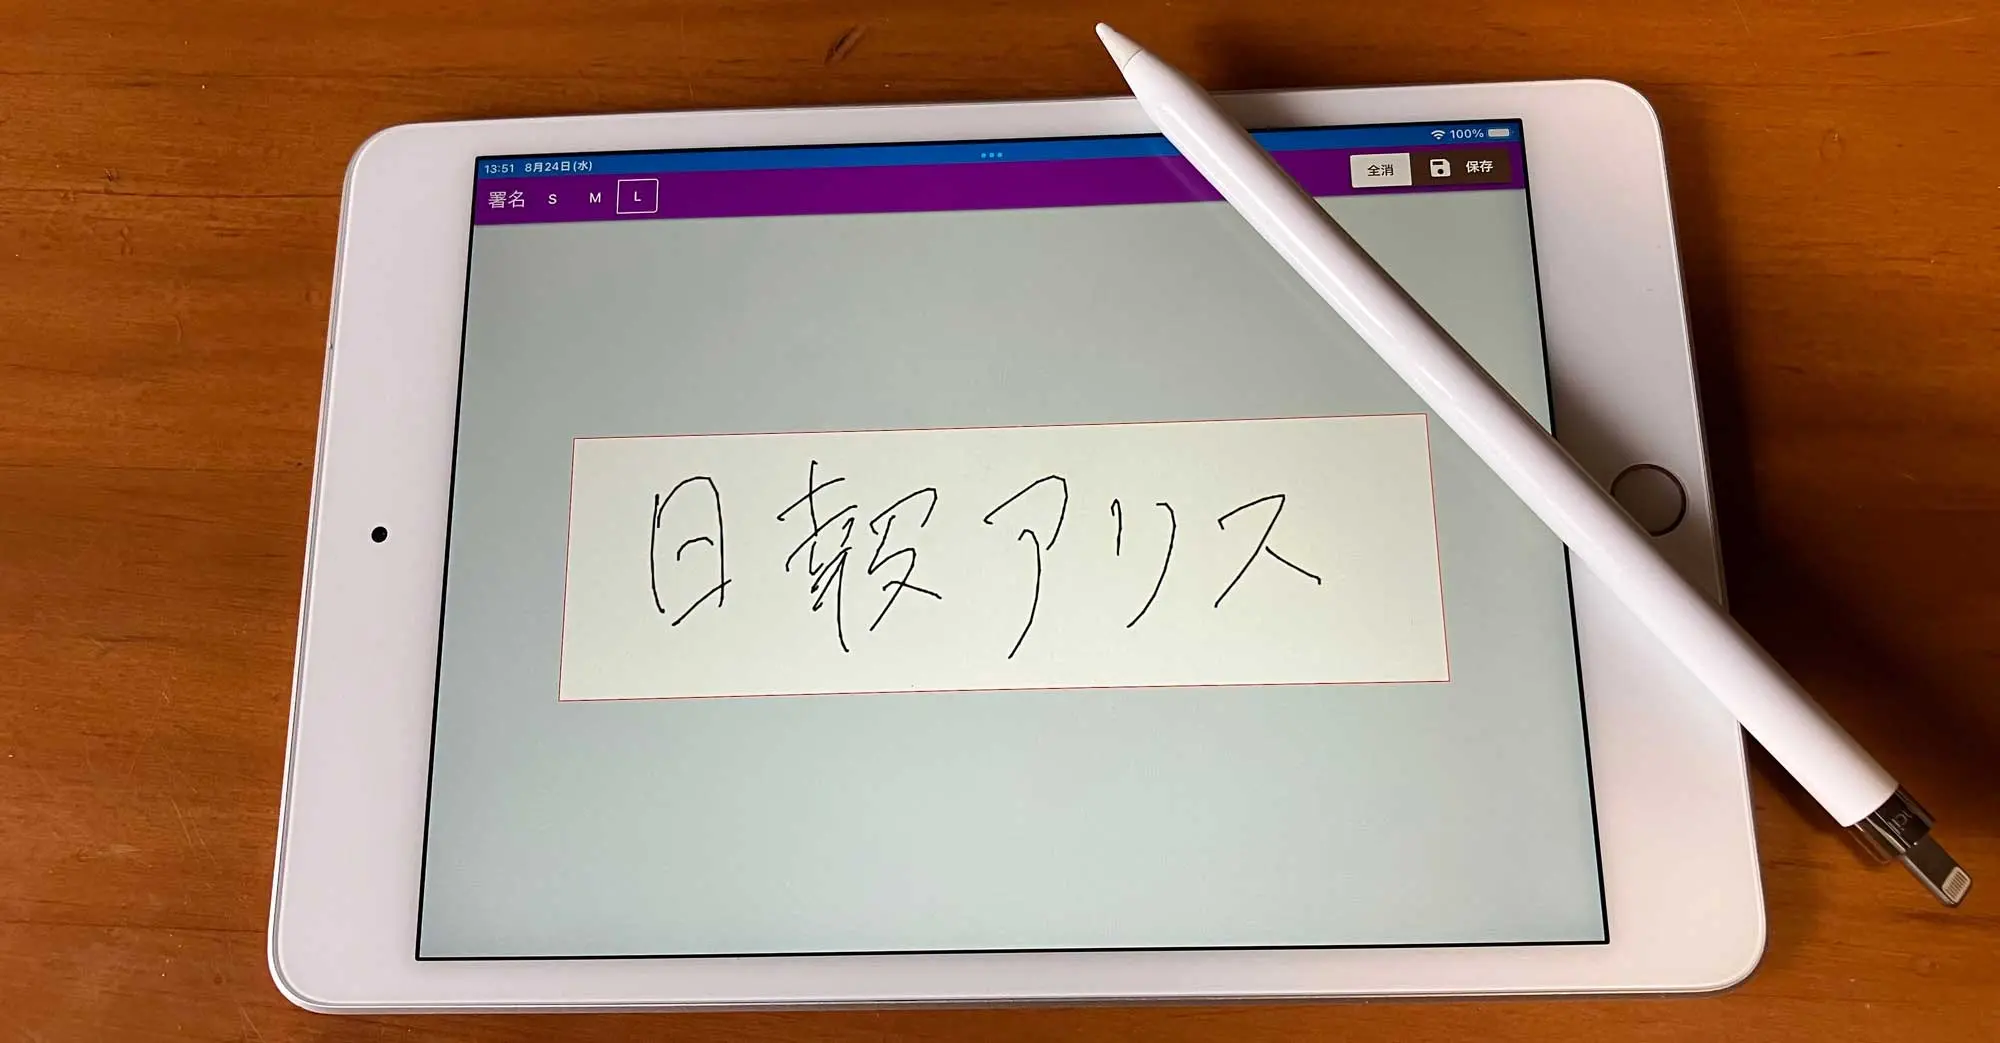 iPad miniとApple Pencilを使って手書きの署名をタブレットに書き込んでいる様子